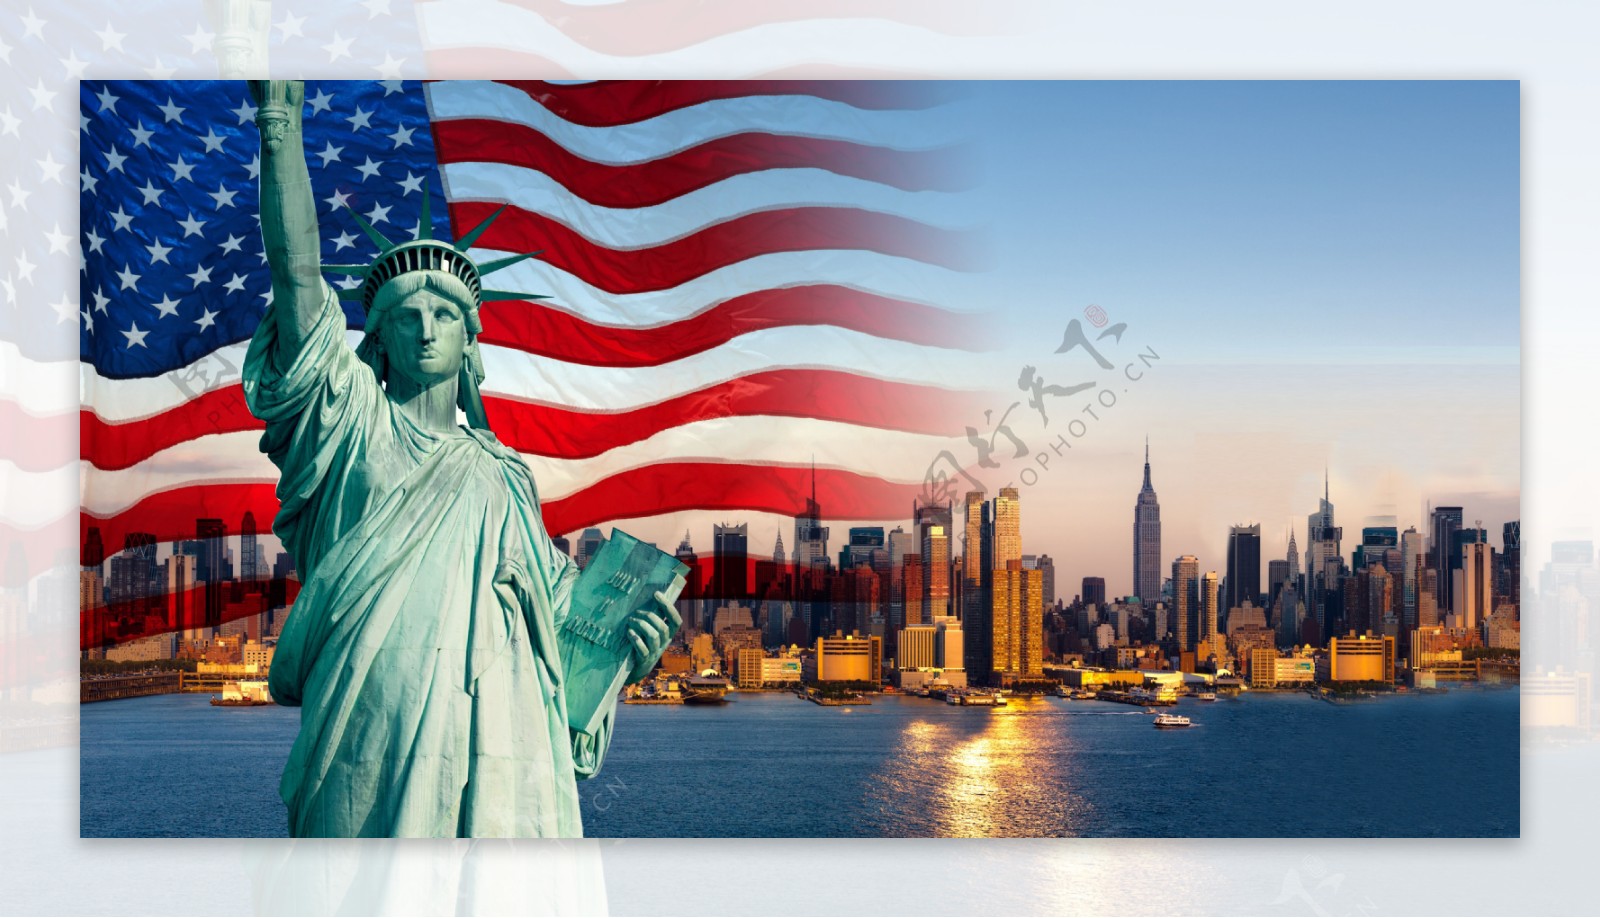 自由女神像美国国旗纽约市